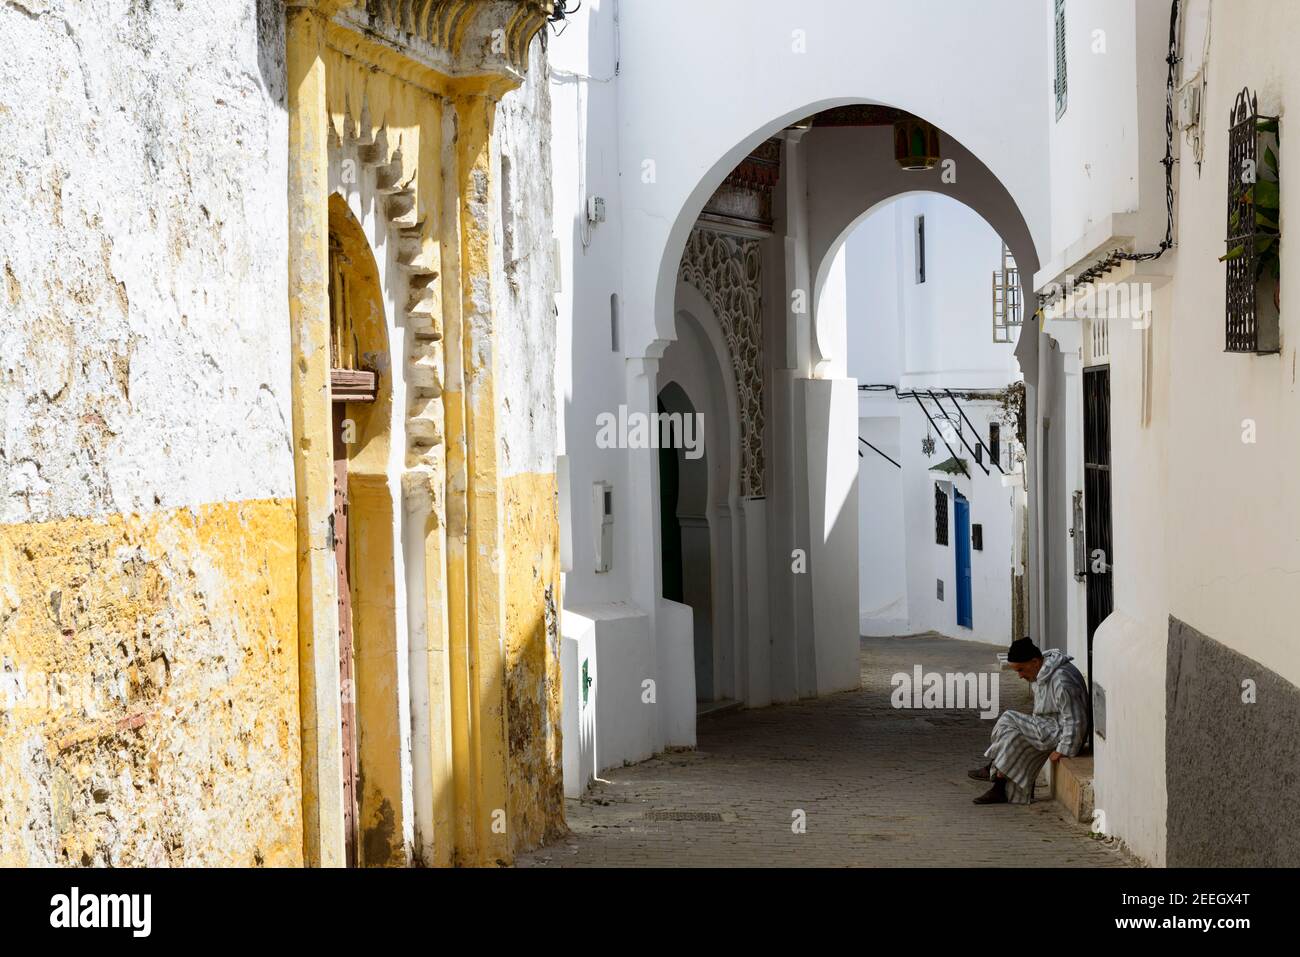 Un uomo che indossa una djellaba a righe si trova di fronte a una piccola moschea, sulla soglia di una casa nella medina di Tangeri, Marocco. Foto Stock